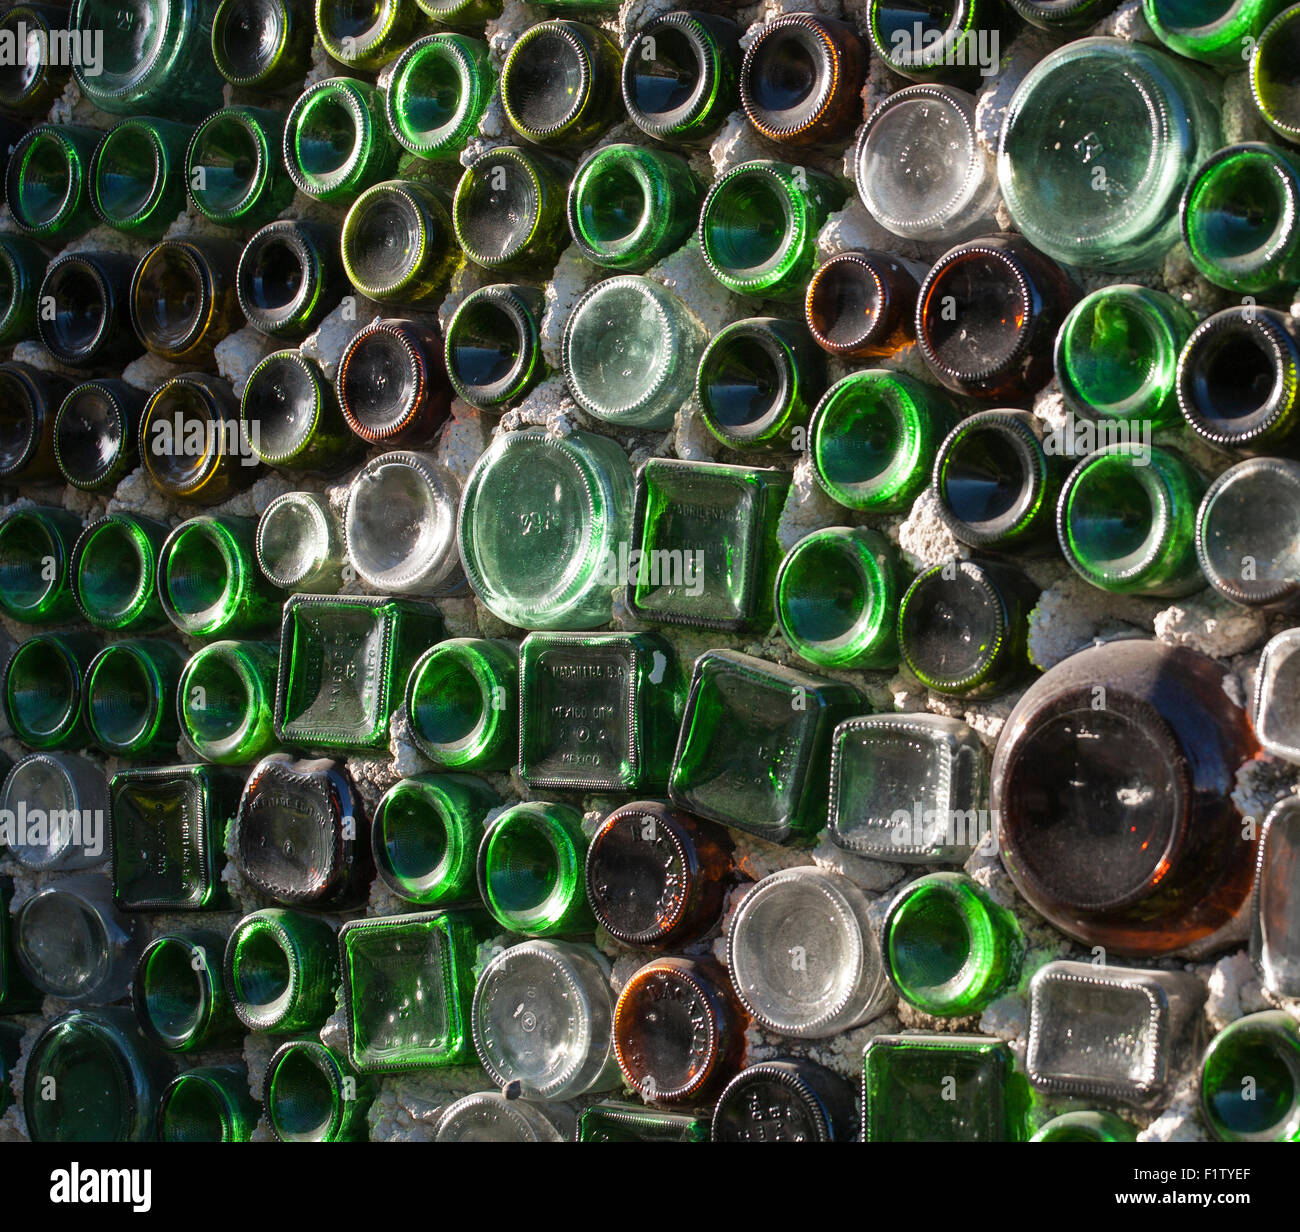 Mur de bouteille. Un mur créée à partir d'un mélange de vert, brun clair et des bouteilles vides mortiers ensemble. Playa del Carmen, Quintana Roo, Mexique Banque D'Images